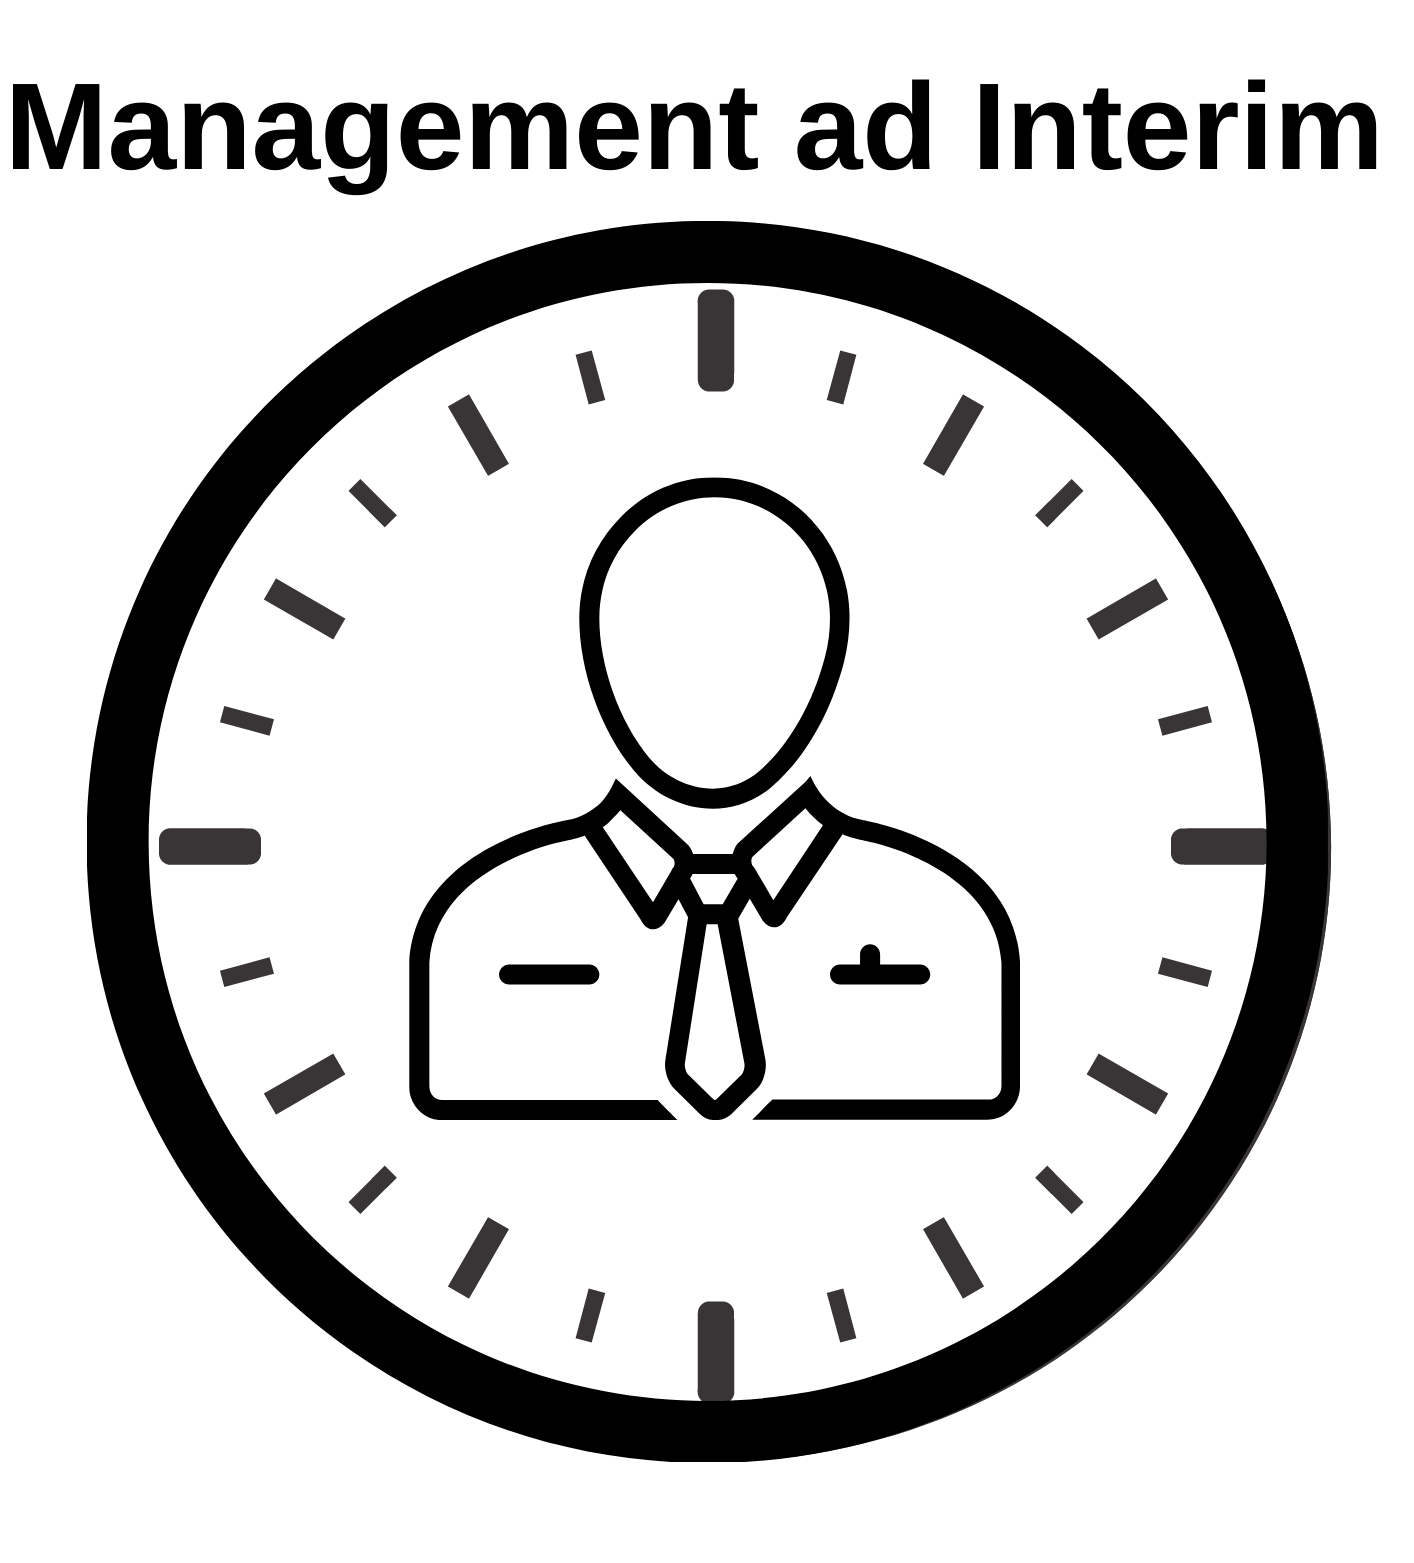 Management ad interim